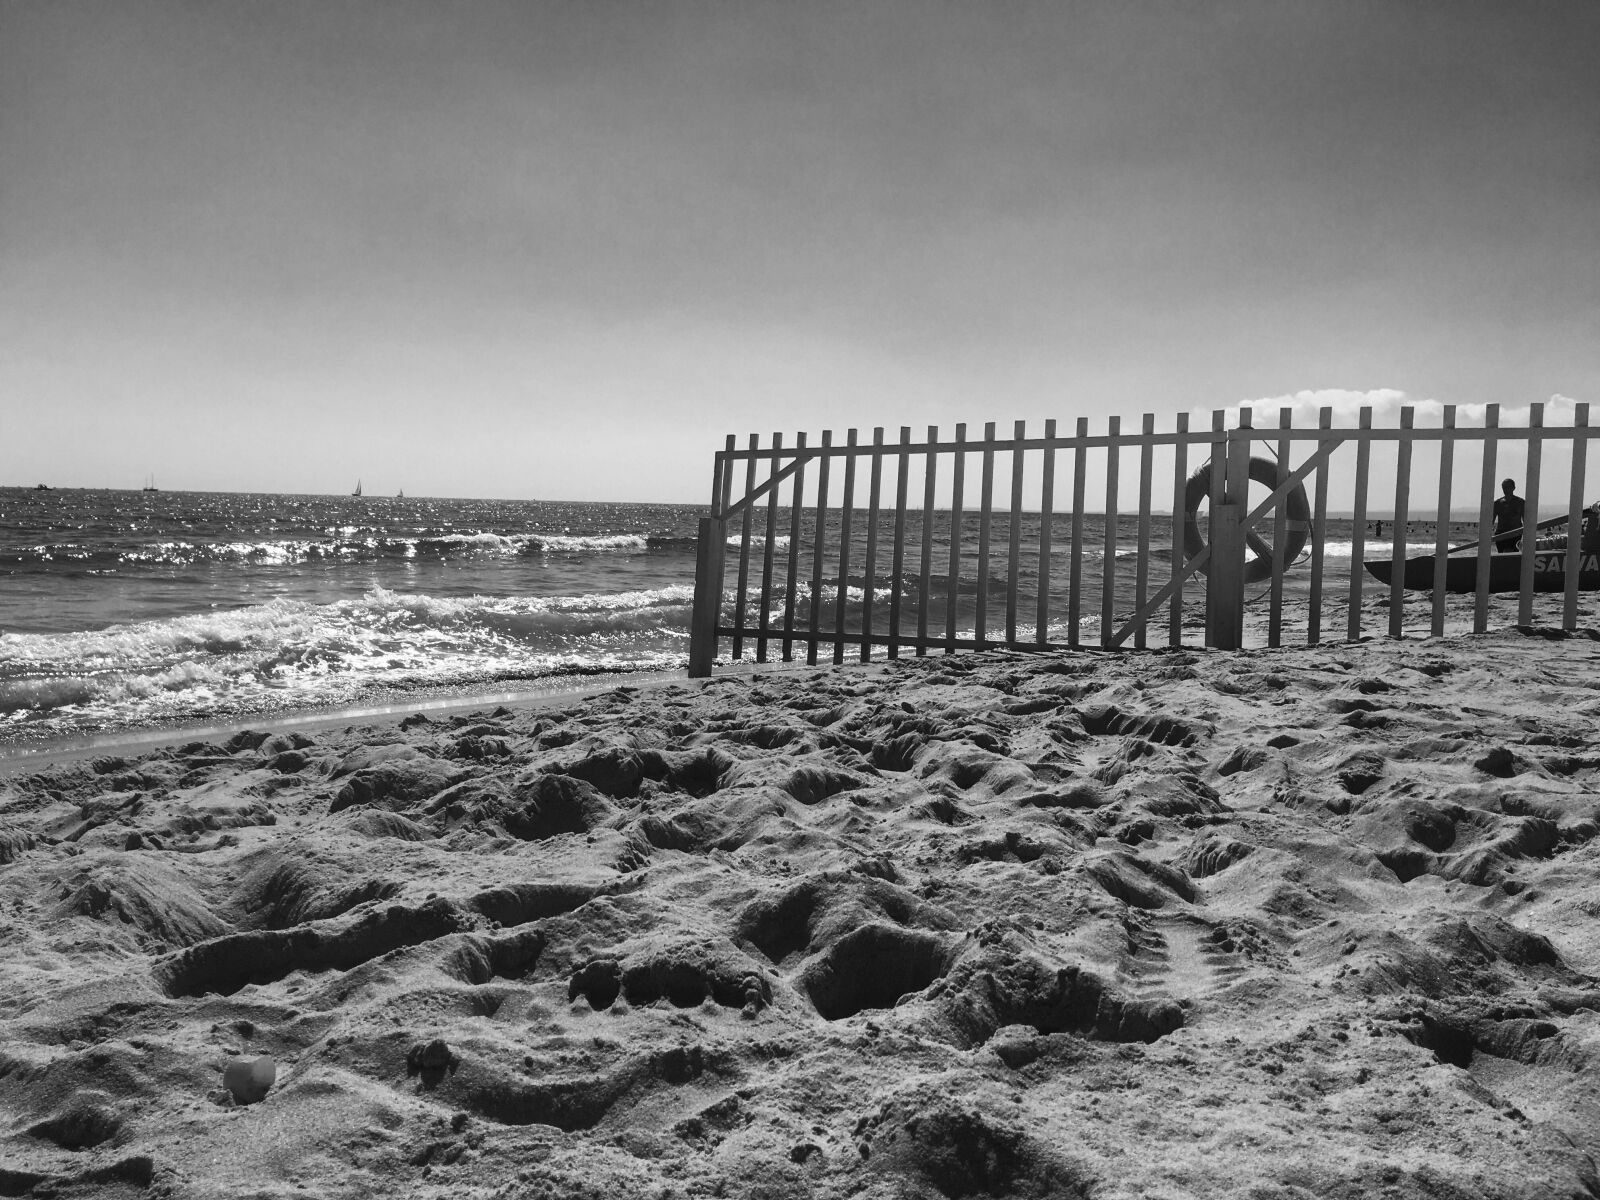 Apple iPhone 6s sample photo. Sea, beach, flag photography